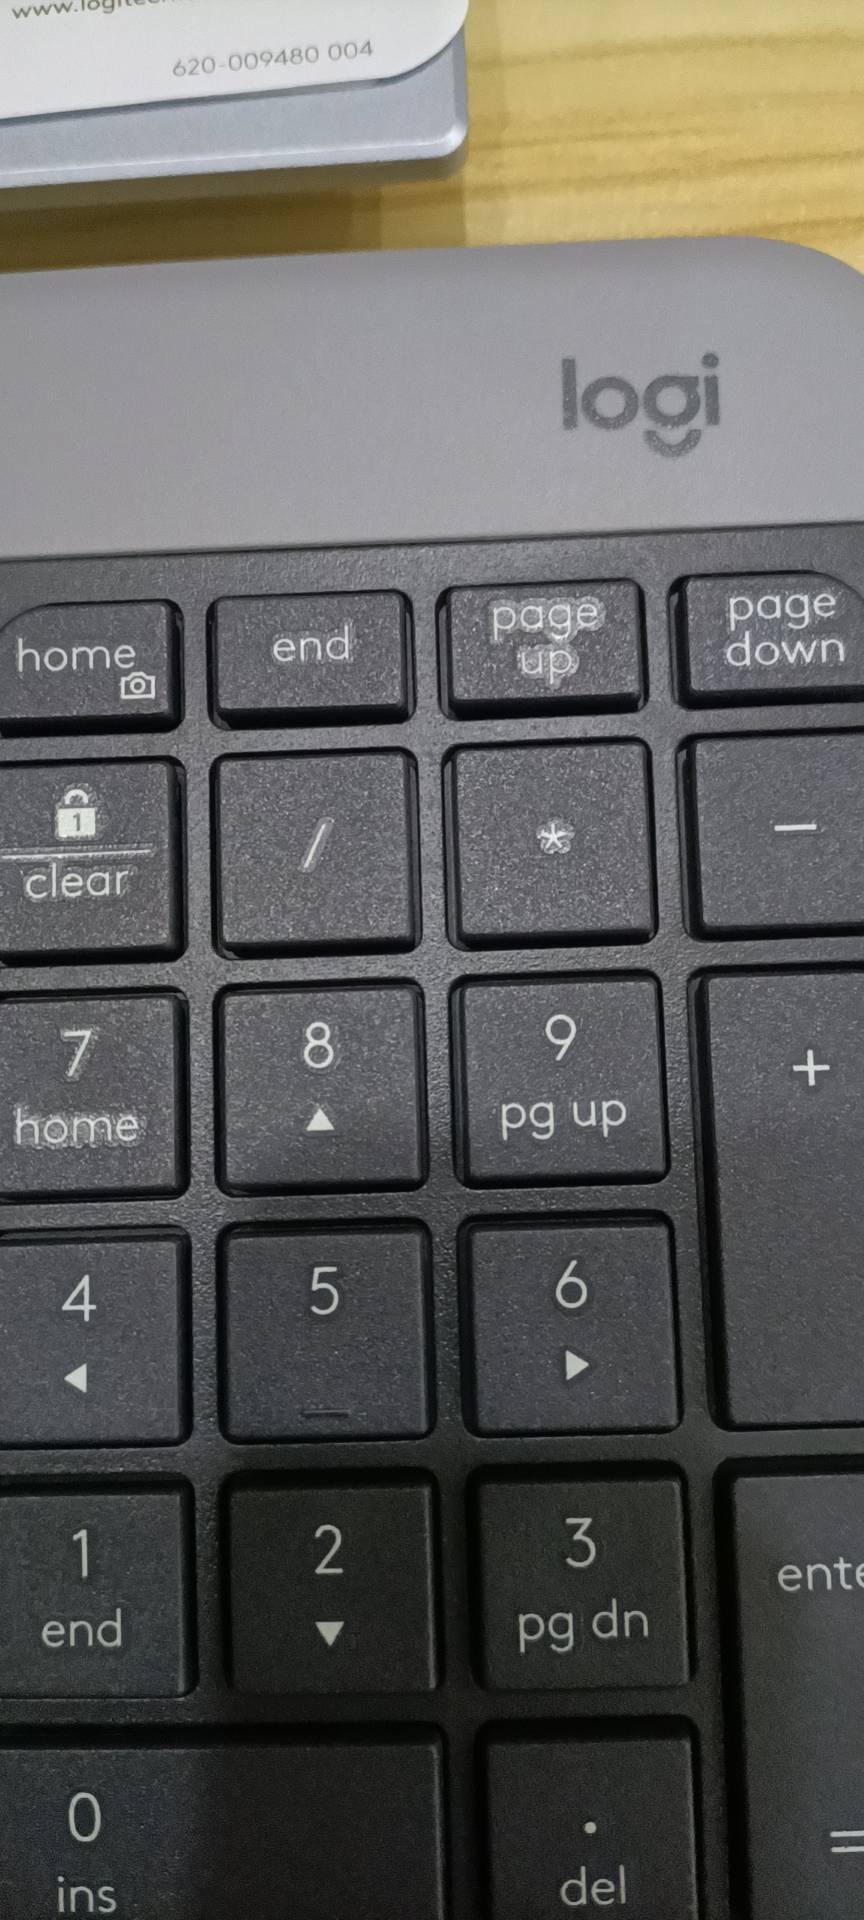 罗技(Logitech)K580 轻薄多设备无线蓝牙键盘便携笔记本平板办公键盘 黑色晒单图